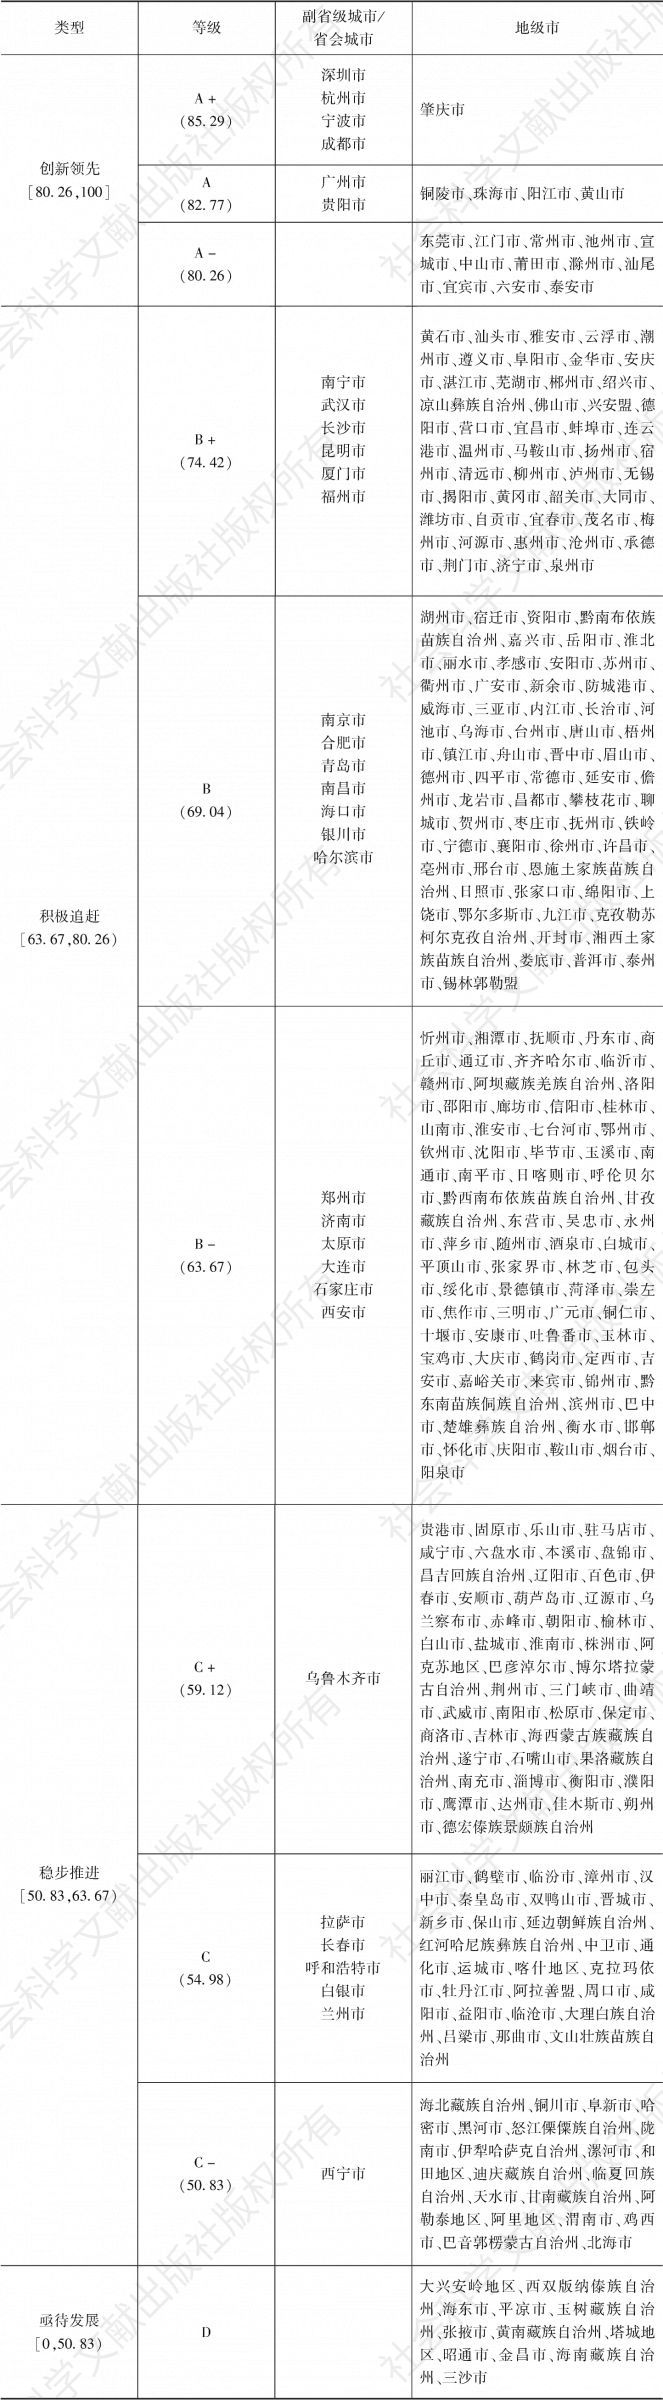 表2 中国地方政府互联网服务能力评价等级分类